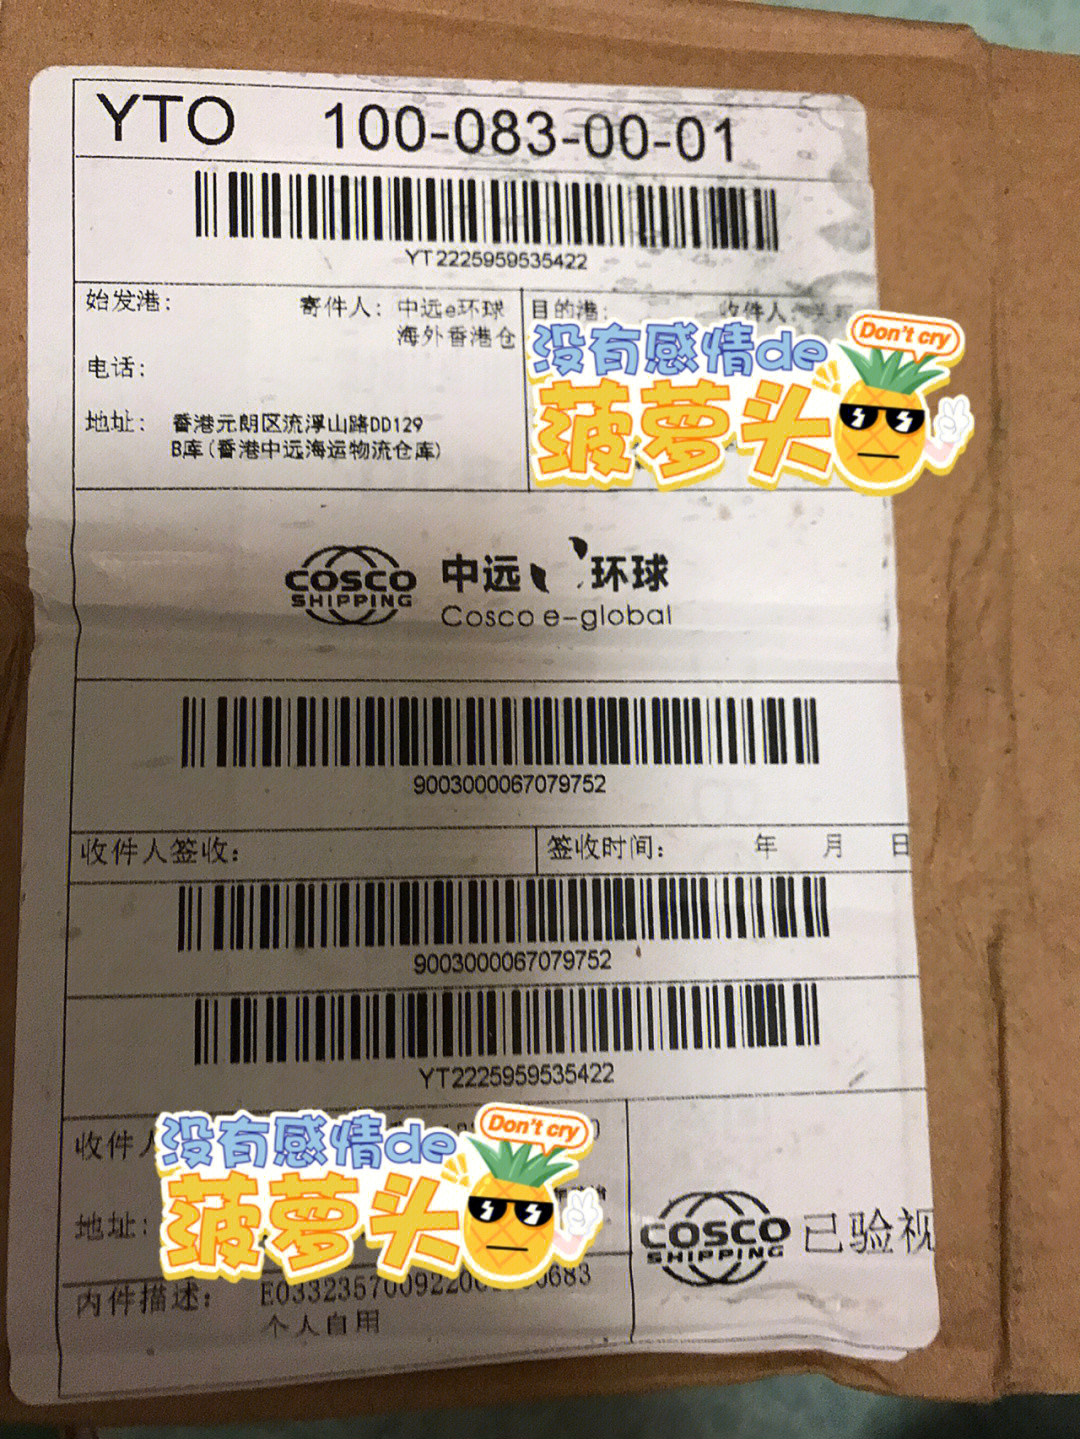 香港莎莎微信公众号上购物被骗